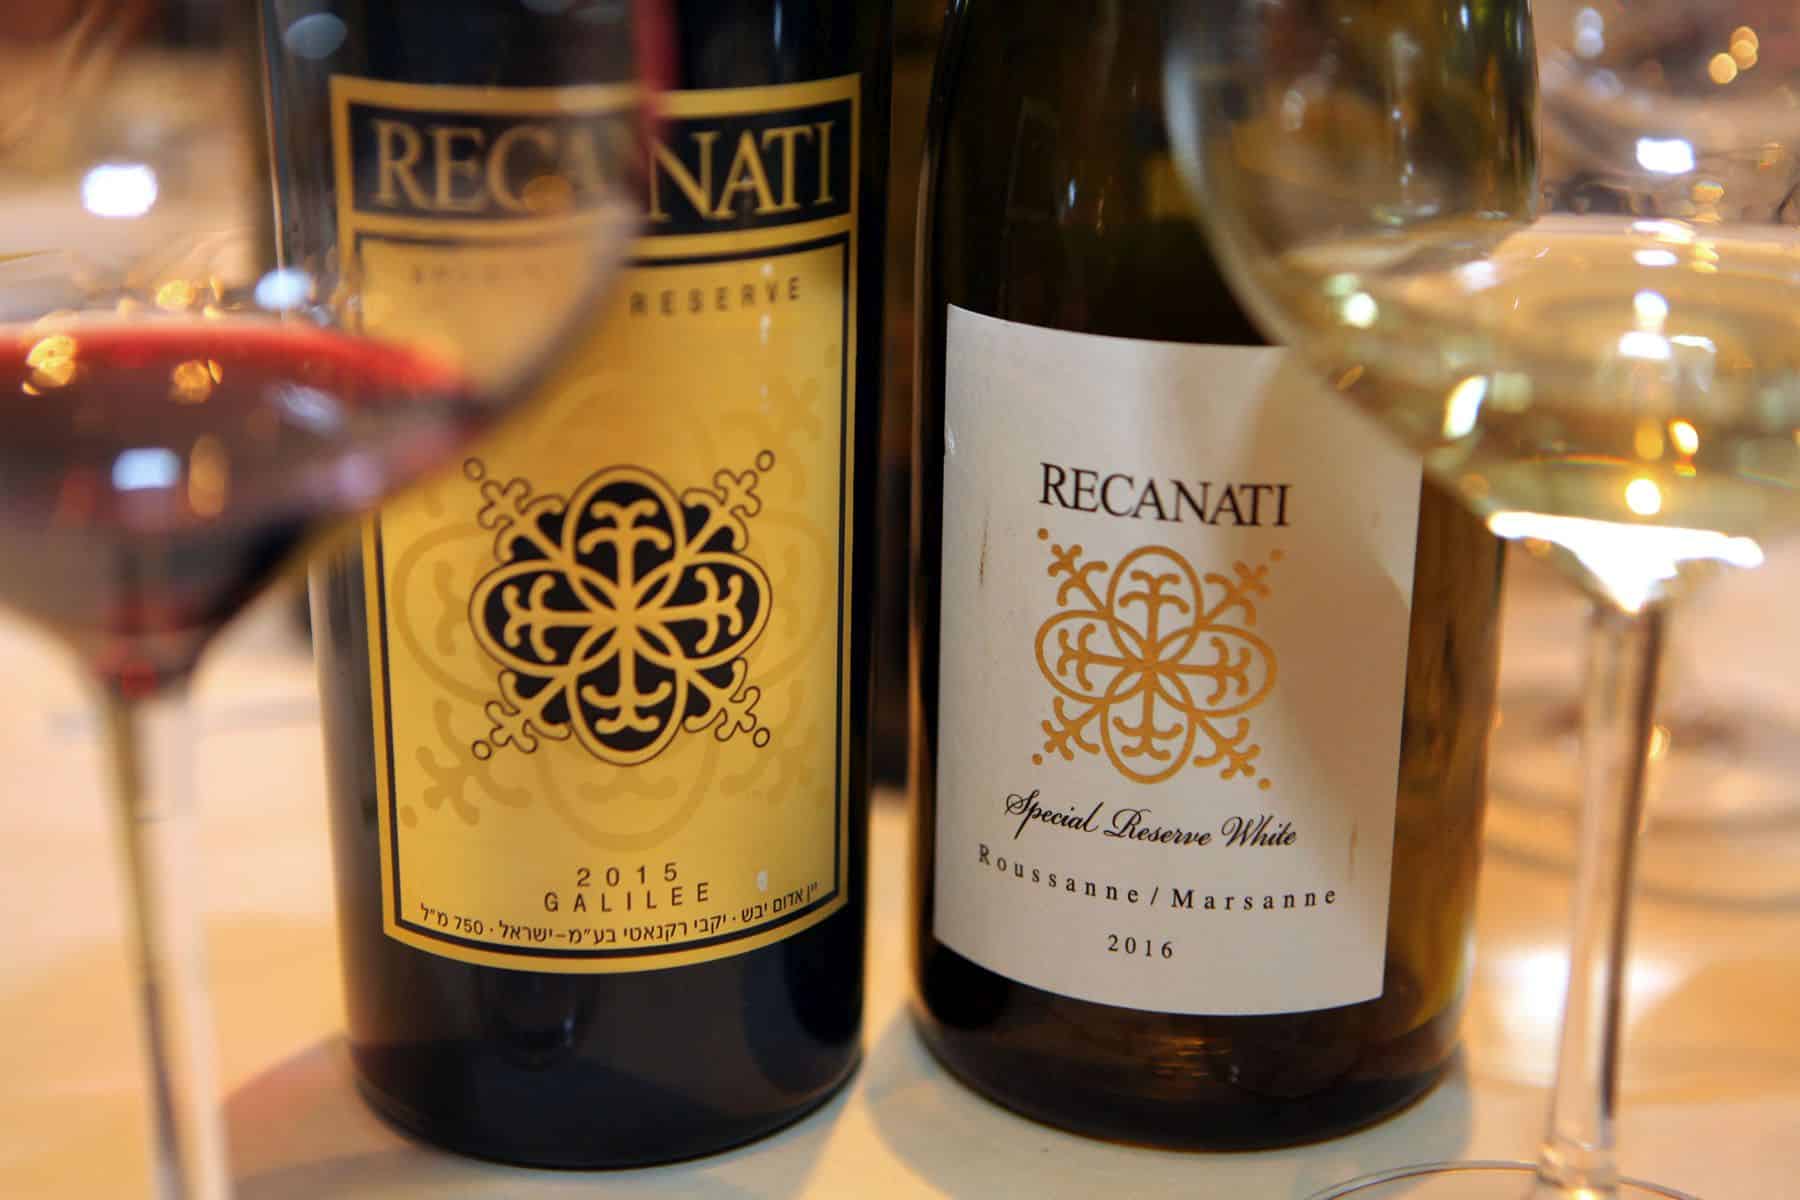 ספיישל רזרב הוא היין הטוב ביותר של רקנאטי בכל שנה שמיוצר. מייצג את היקב, שנת בציר וטרואר. צילום דוד סילברמן dpsimages